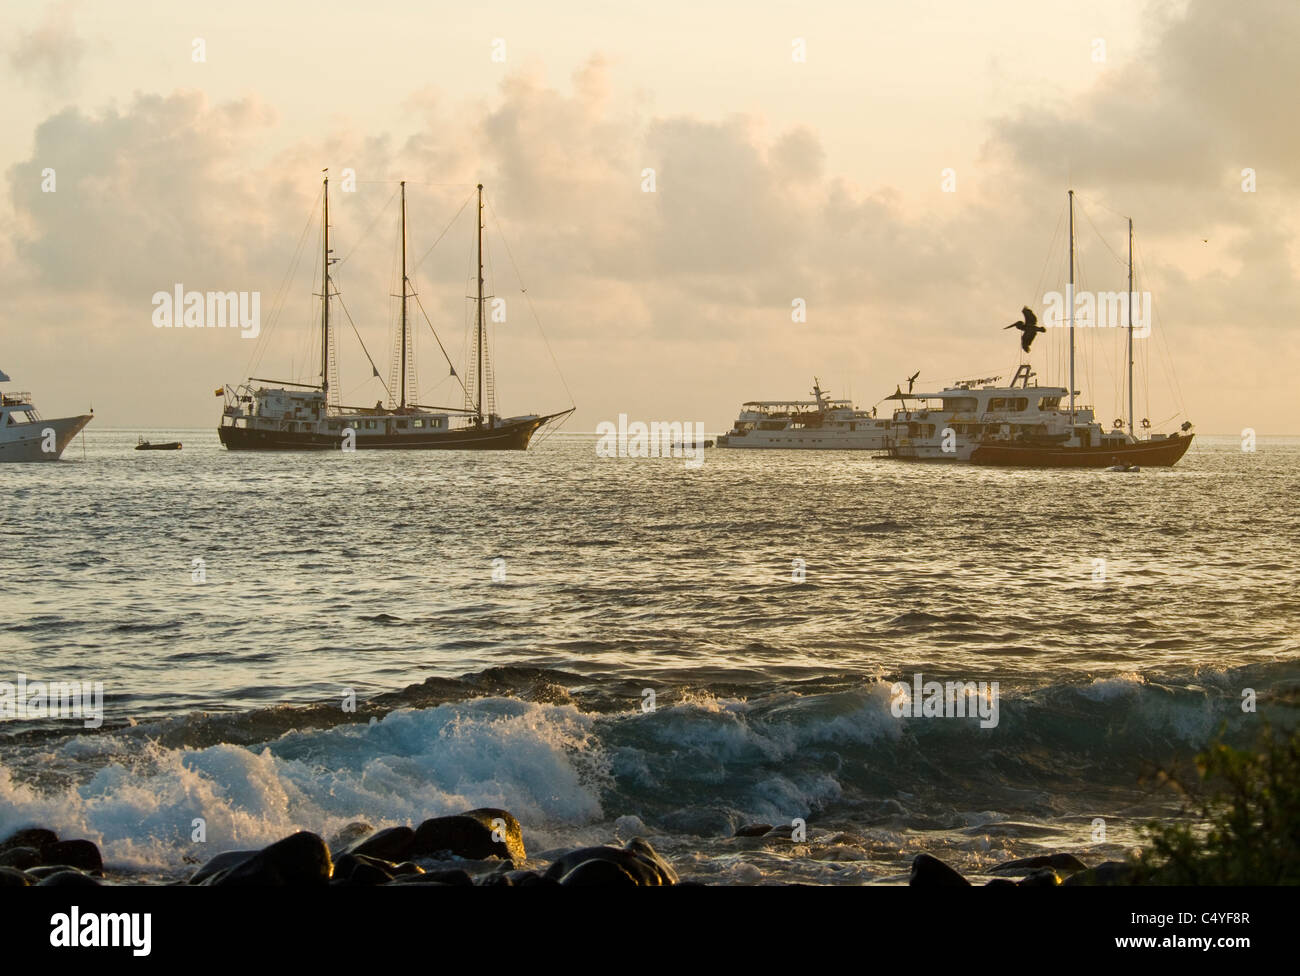 Les excursions en bateau ancré au large de l'île de Espanola dans les îles Galapagos Équateur Banque D'Images